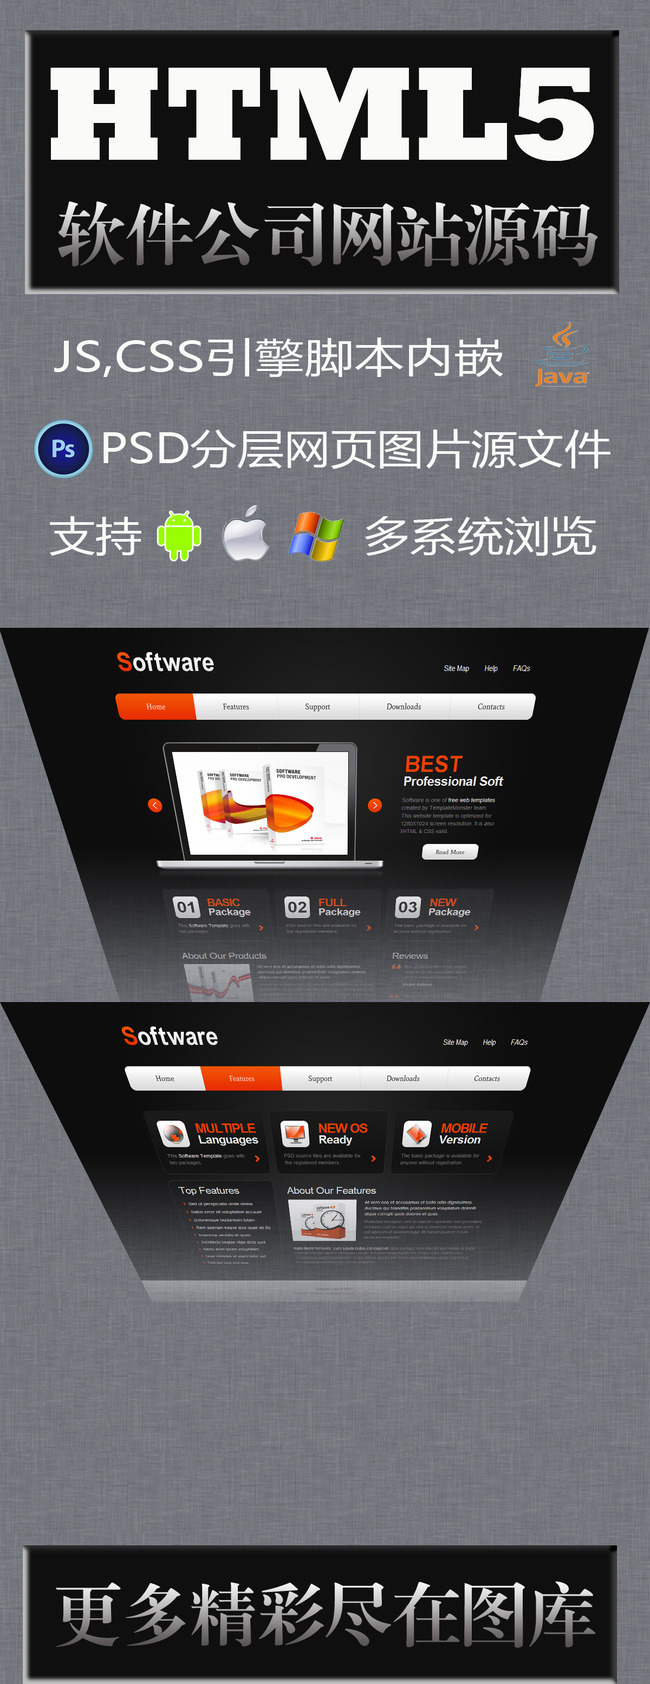 软件公司网站html5模版,兼容手机平板模板下载